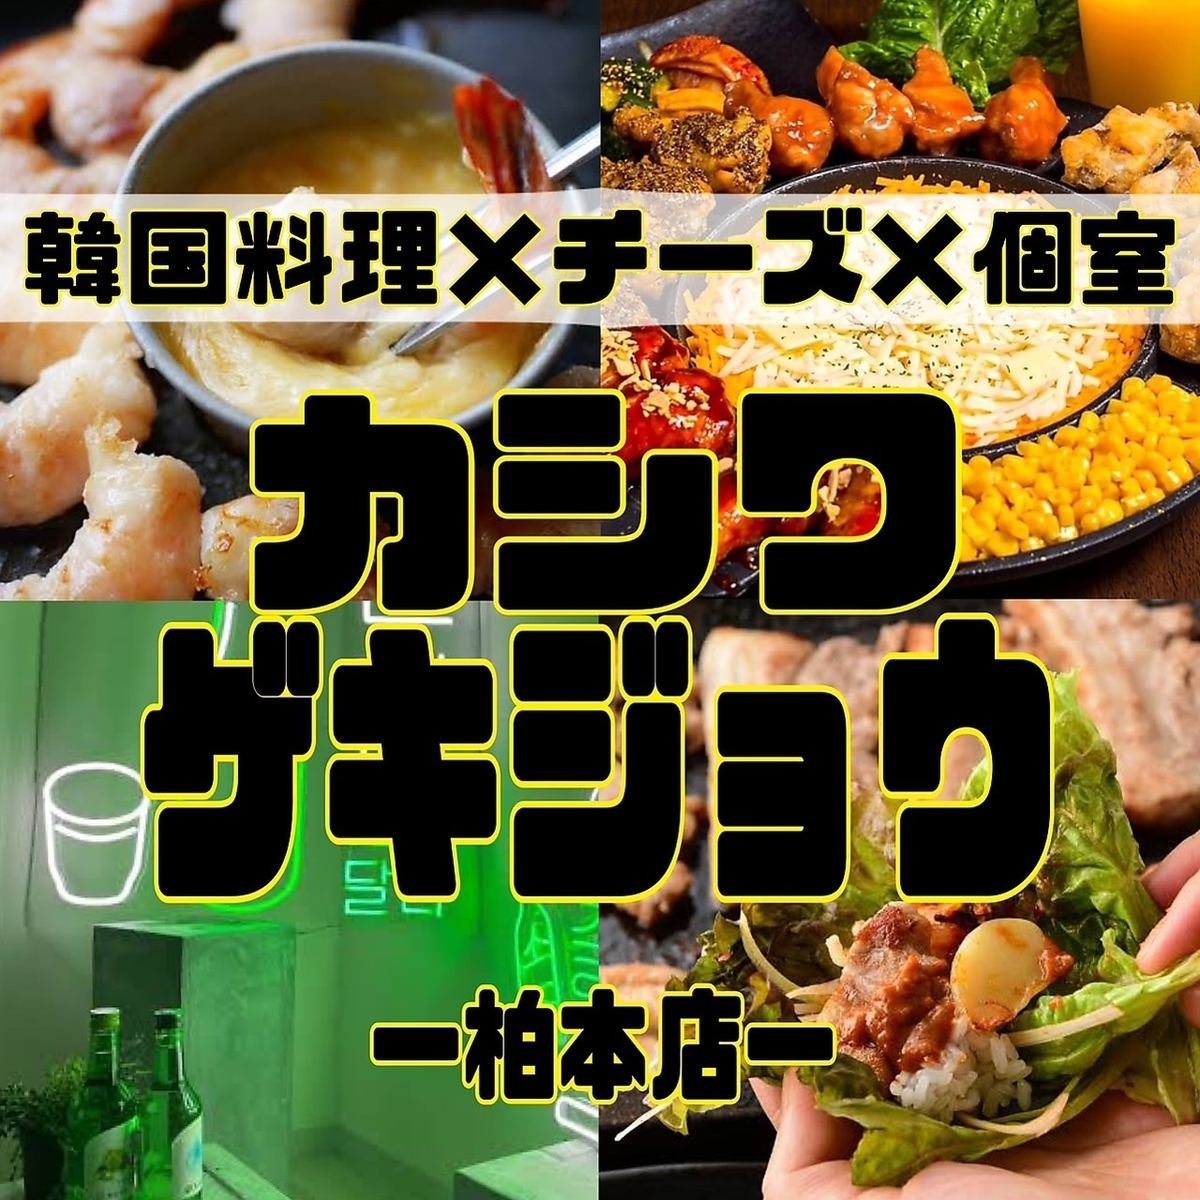 柏站NEW OPEN ☆ 设计师包间和2,980日元100种韩国肉寿司奶酪肉吧无限吃喝